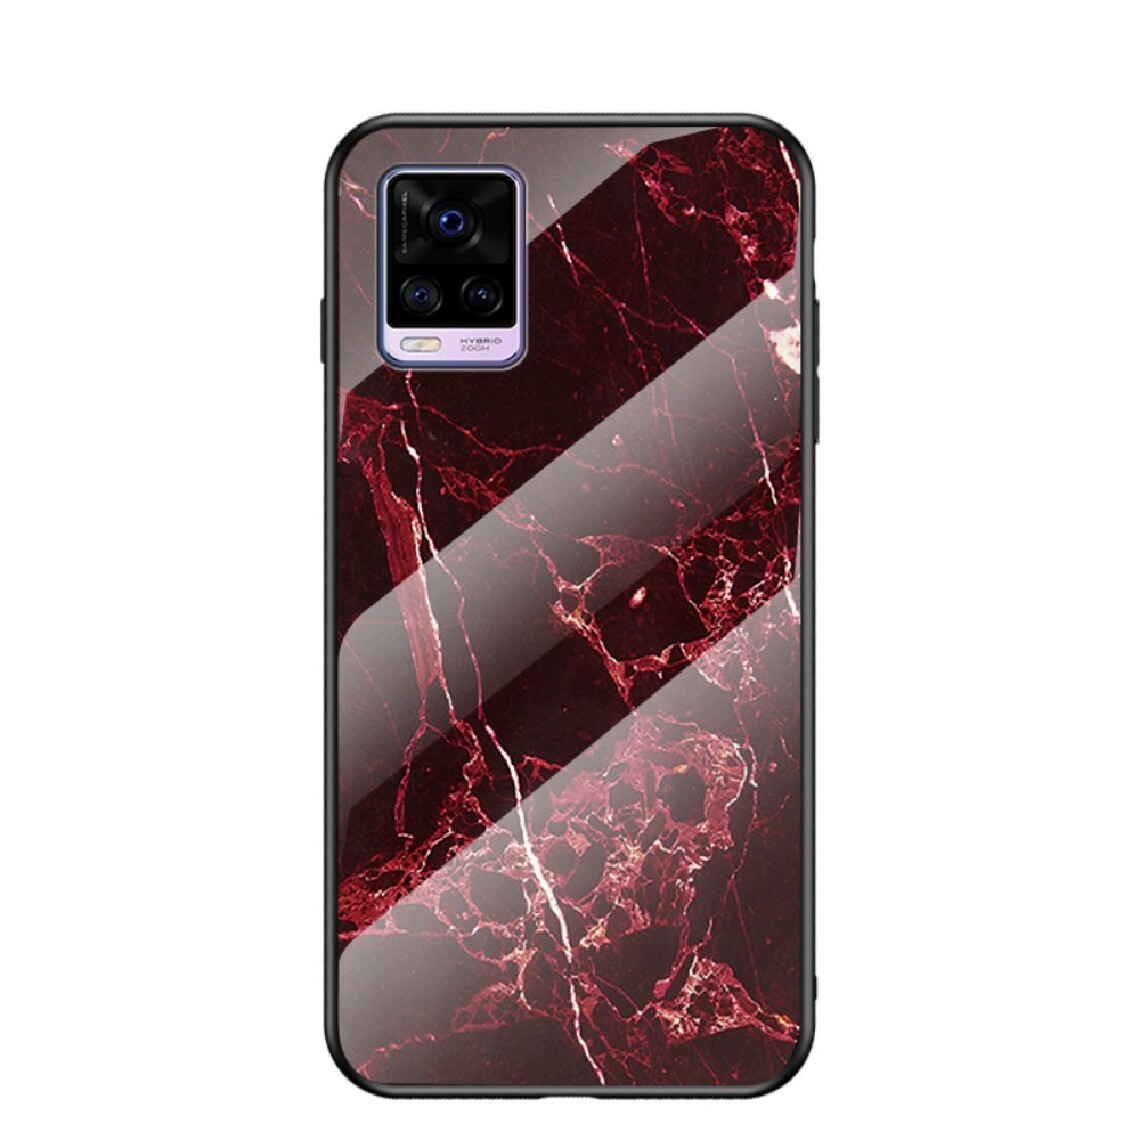 Other - Coque en TPU cadre hybride marbré absorbant les chocs marbre rouge sang pour votre Vivo V20 - Coque, étui smartphone